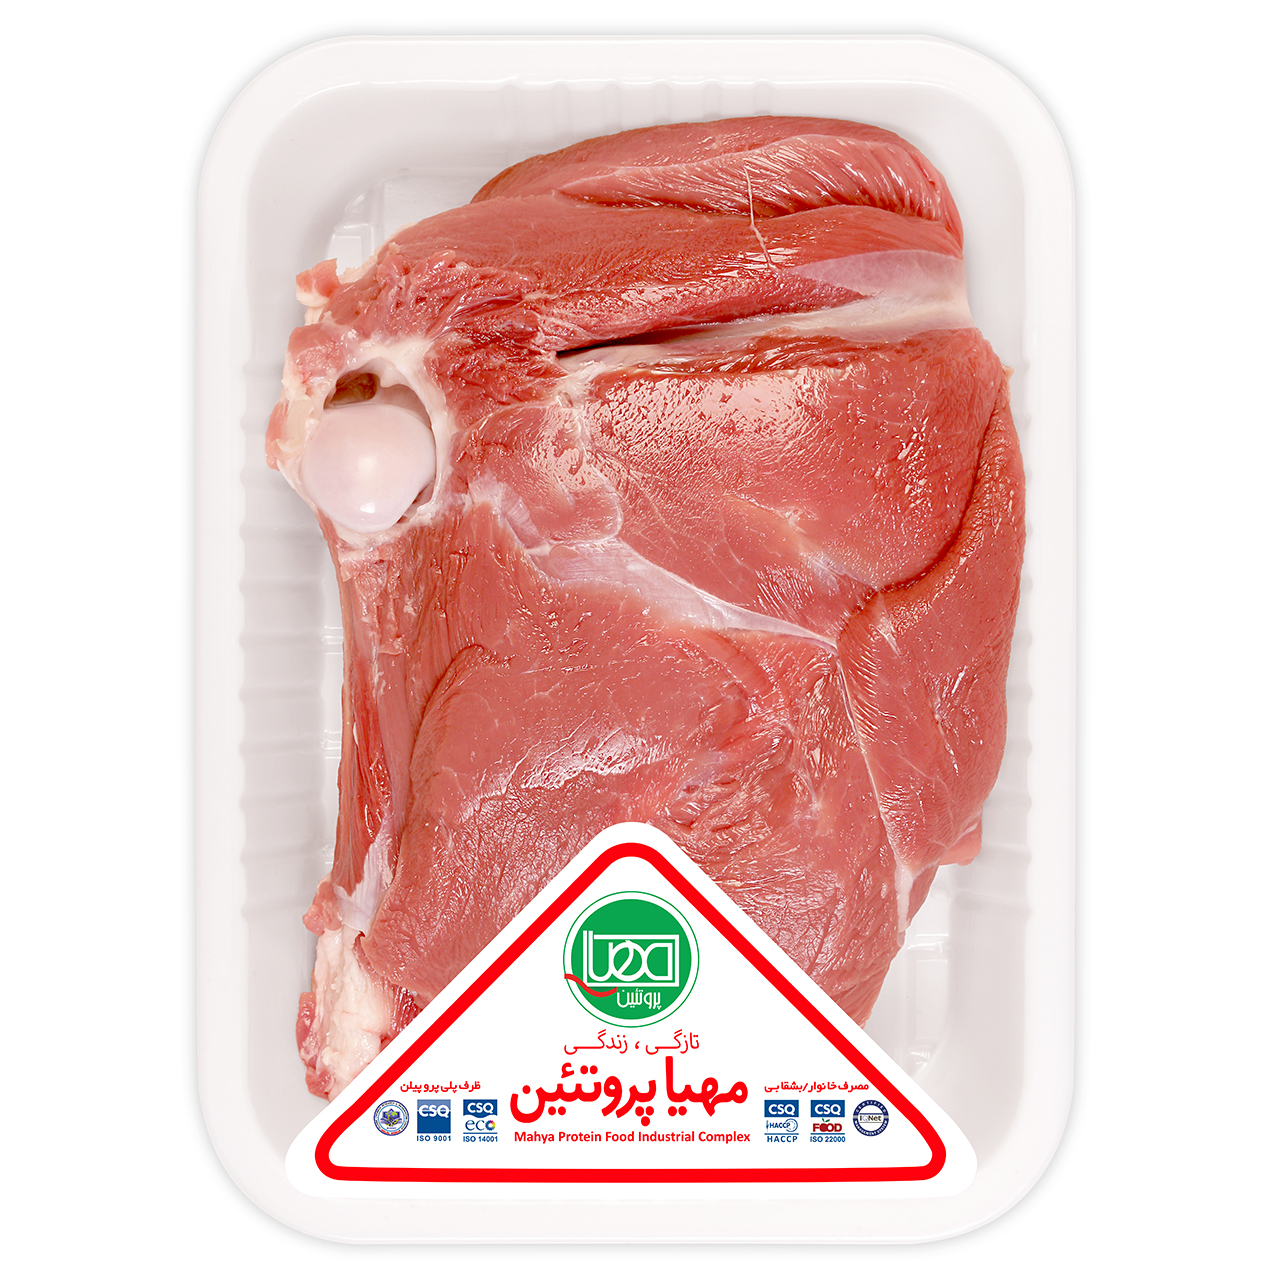 سردست بدون گردن گوسفند داخلی مهیا پروتئین مقدار 2 کیلوگرم